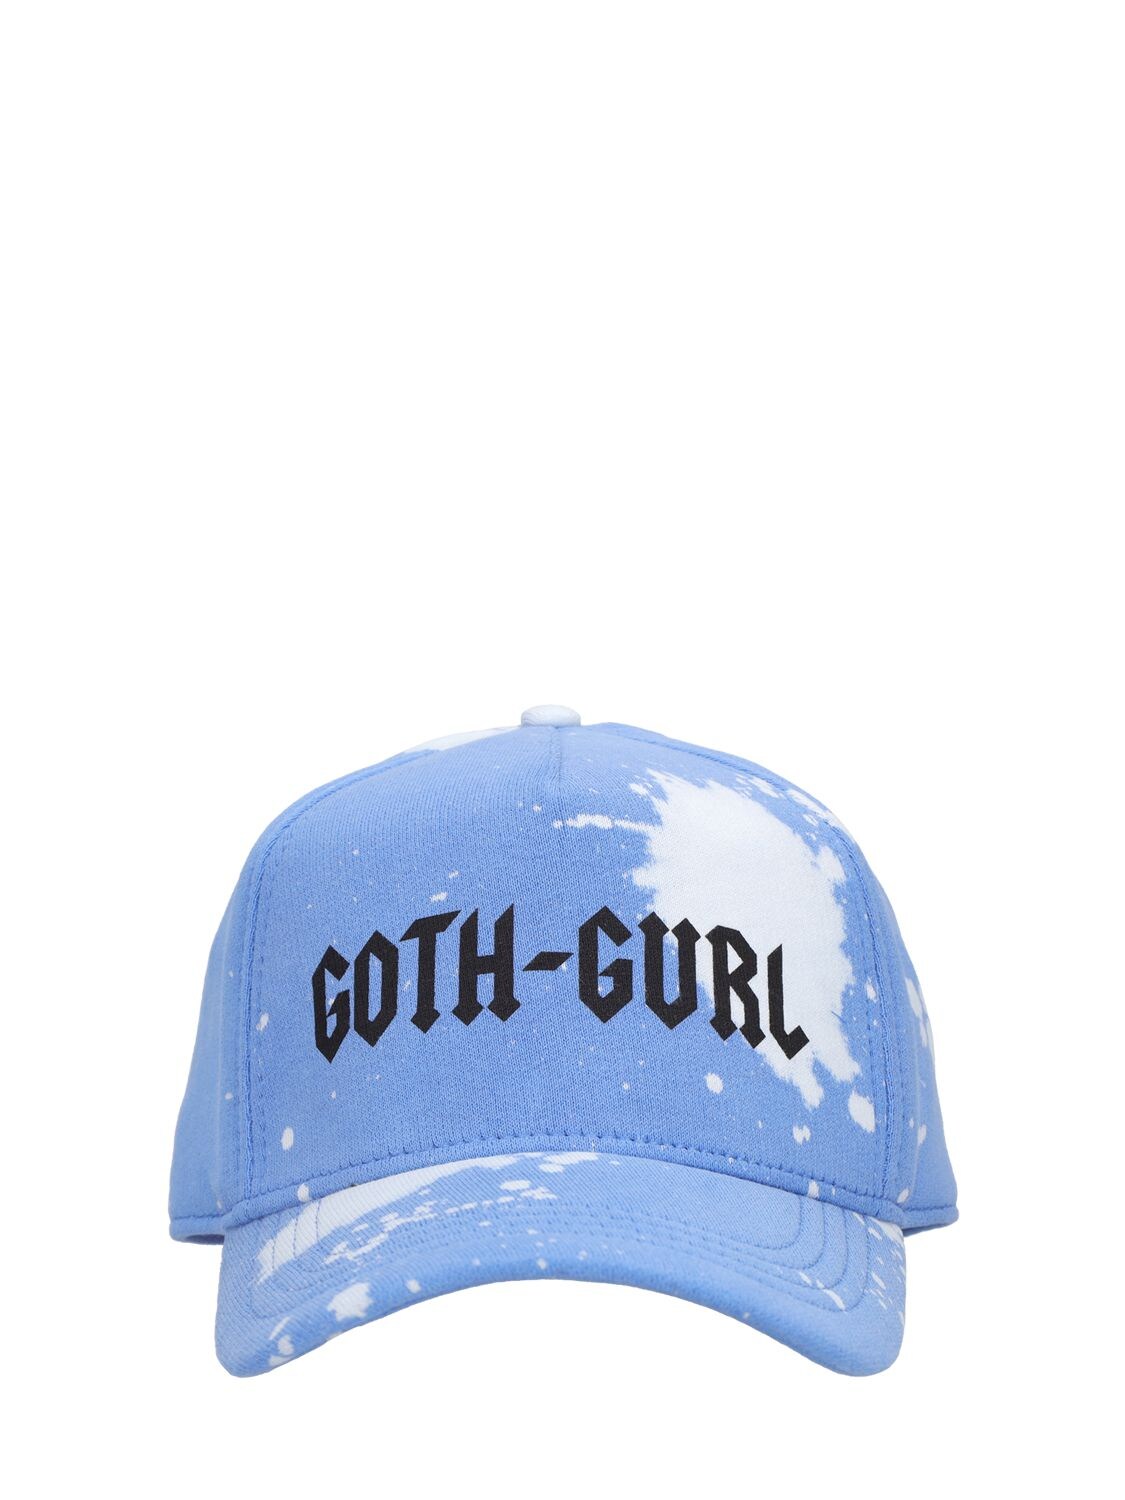 Goth Gurl Cotton Baseball Cap – WOMEN > ACCESSORIES > HATS